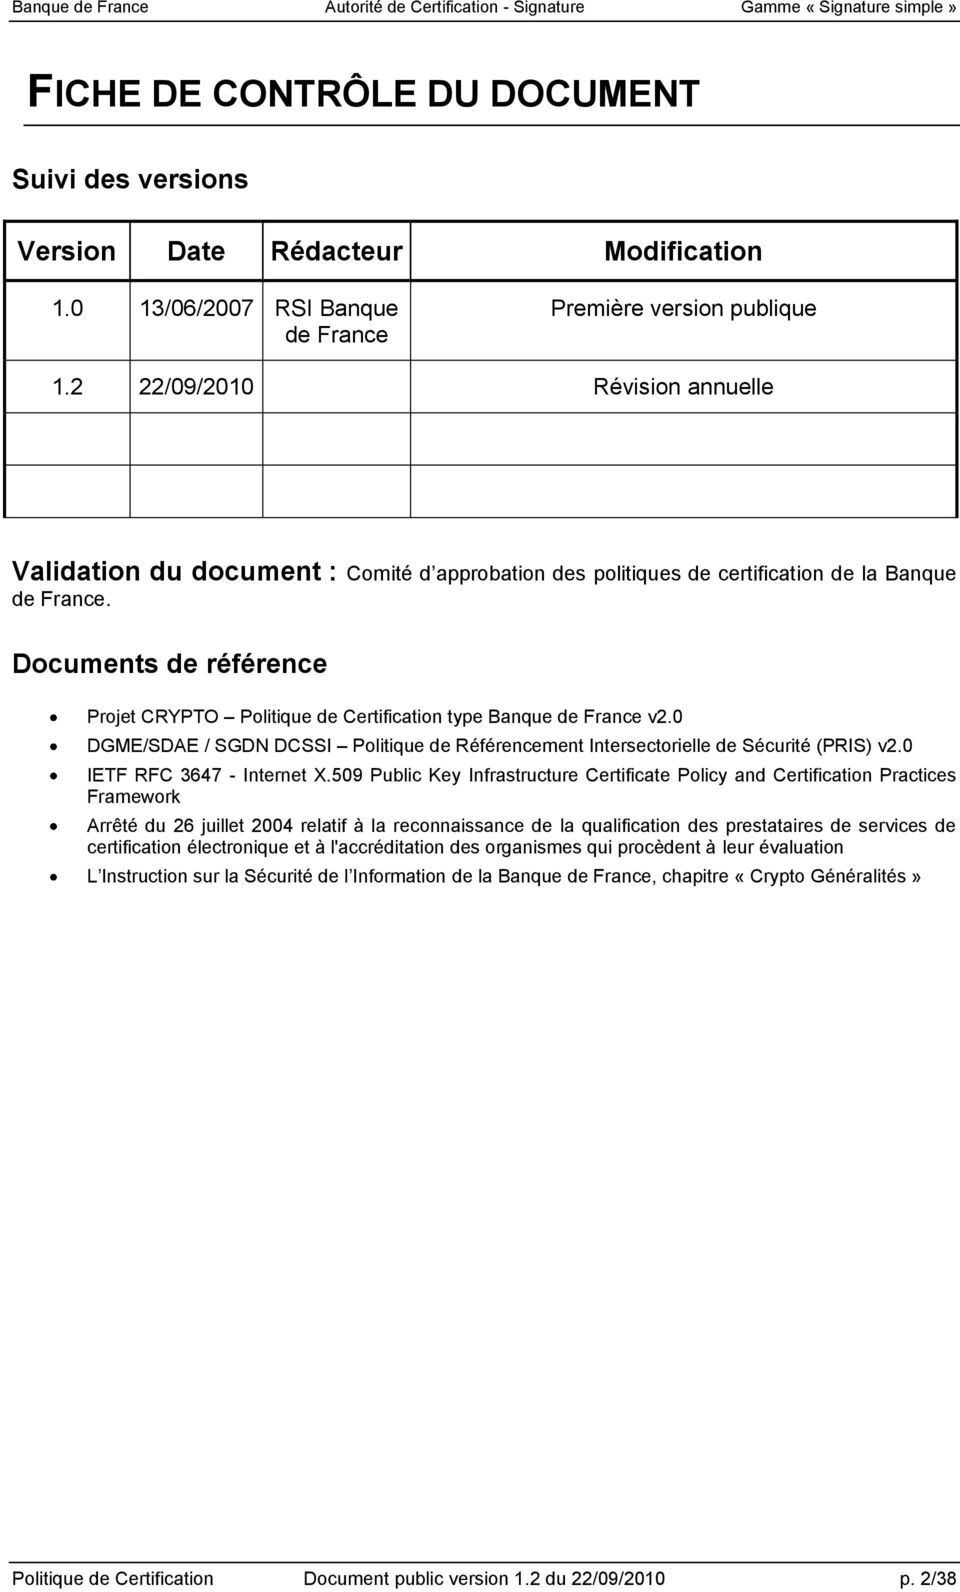 Documents de référence Projet CRYPTO Politique de Certification type Banque de France v2.0 DGME/SDAE / SGDN DCSSI Politique de Référencement Intersectorielle de Sécurité (PRIS) v2.